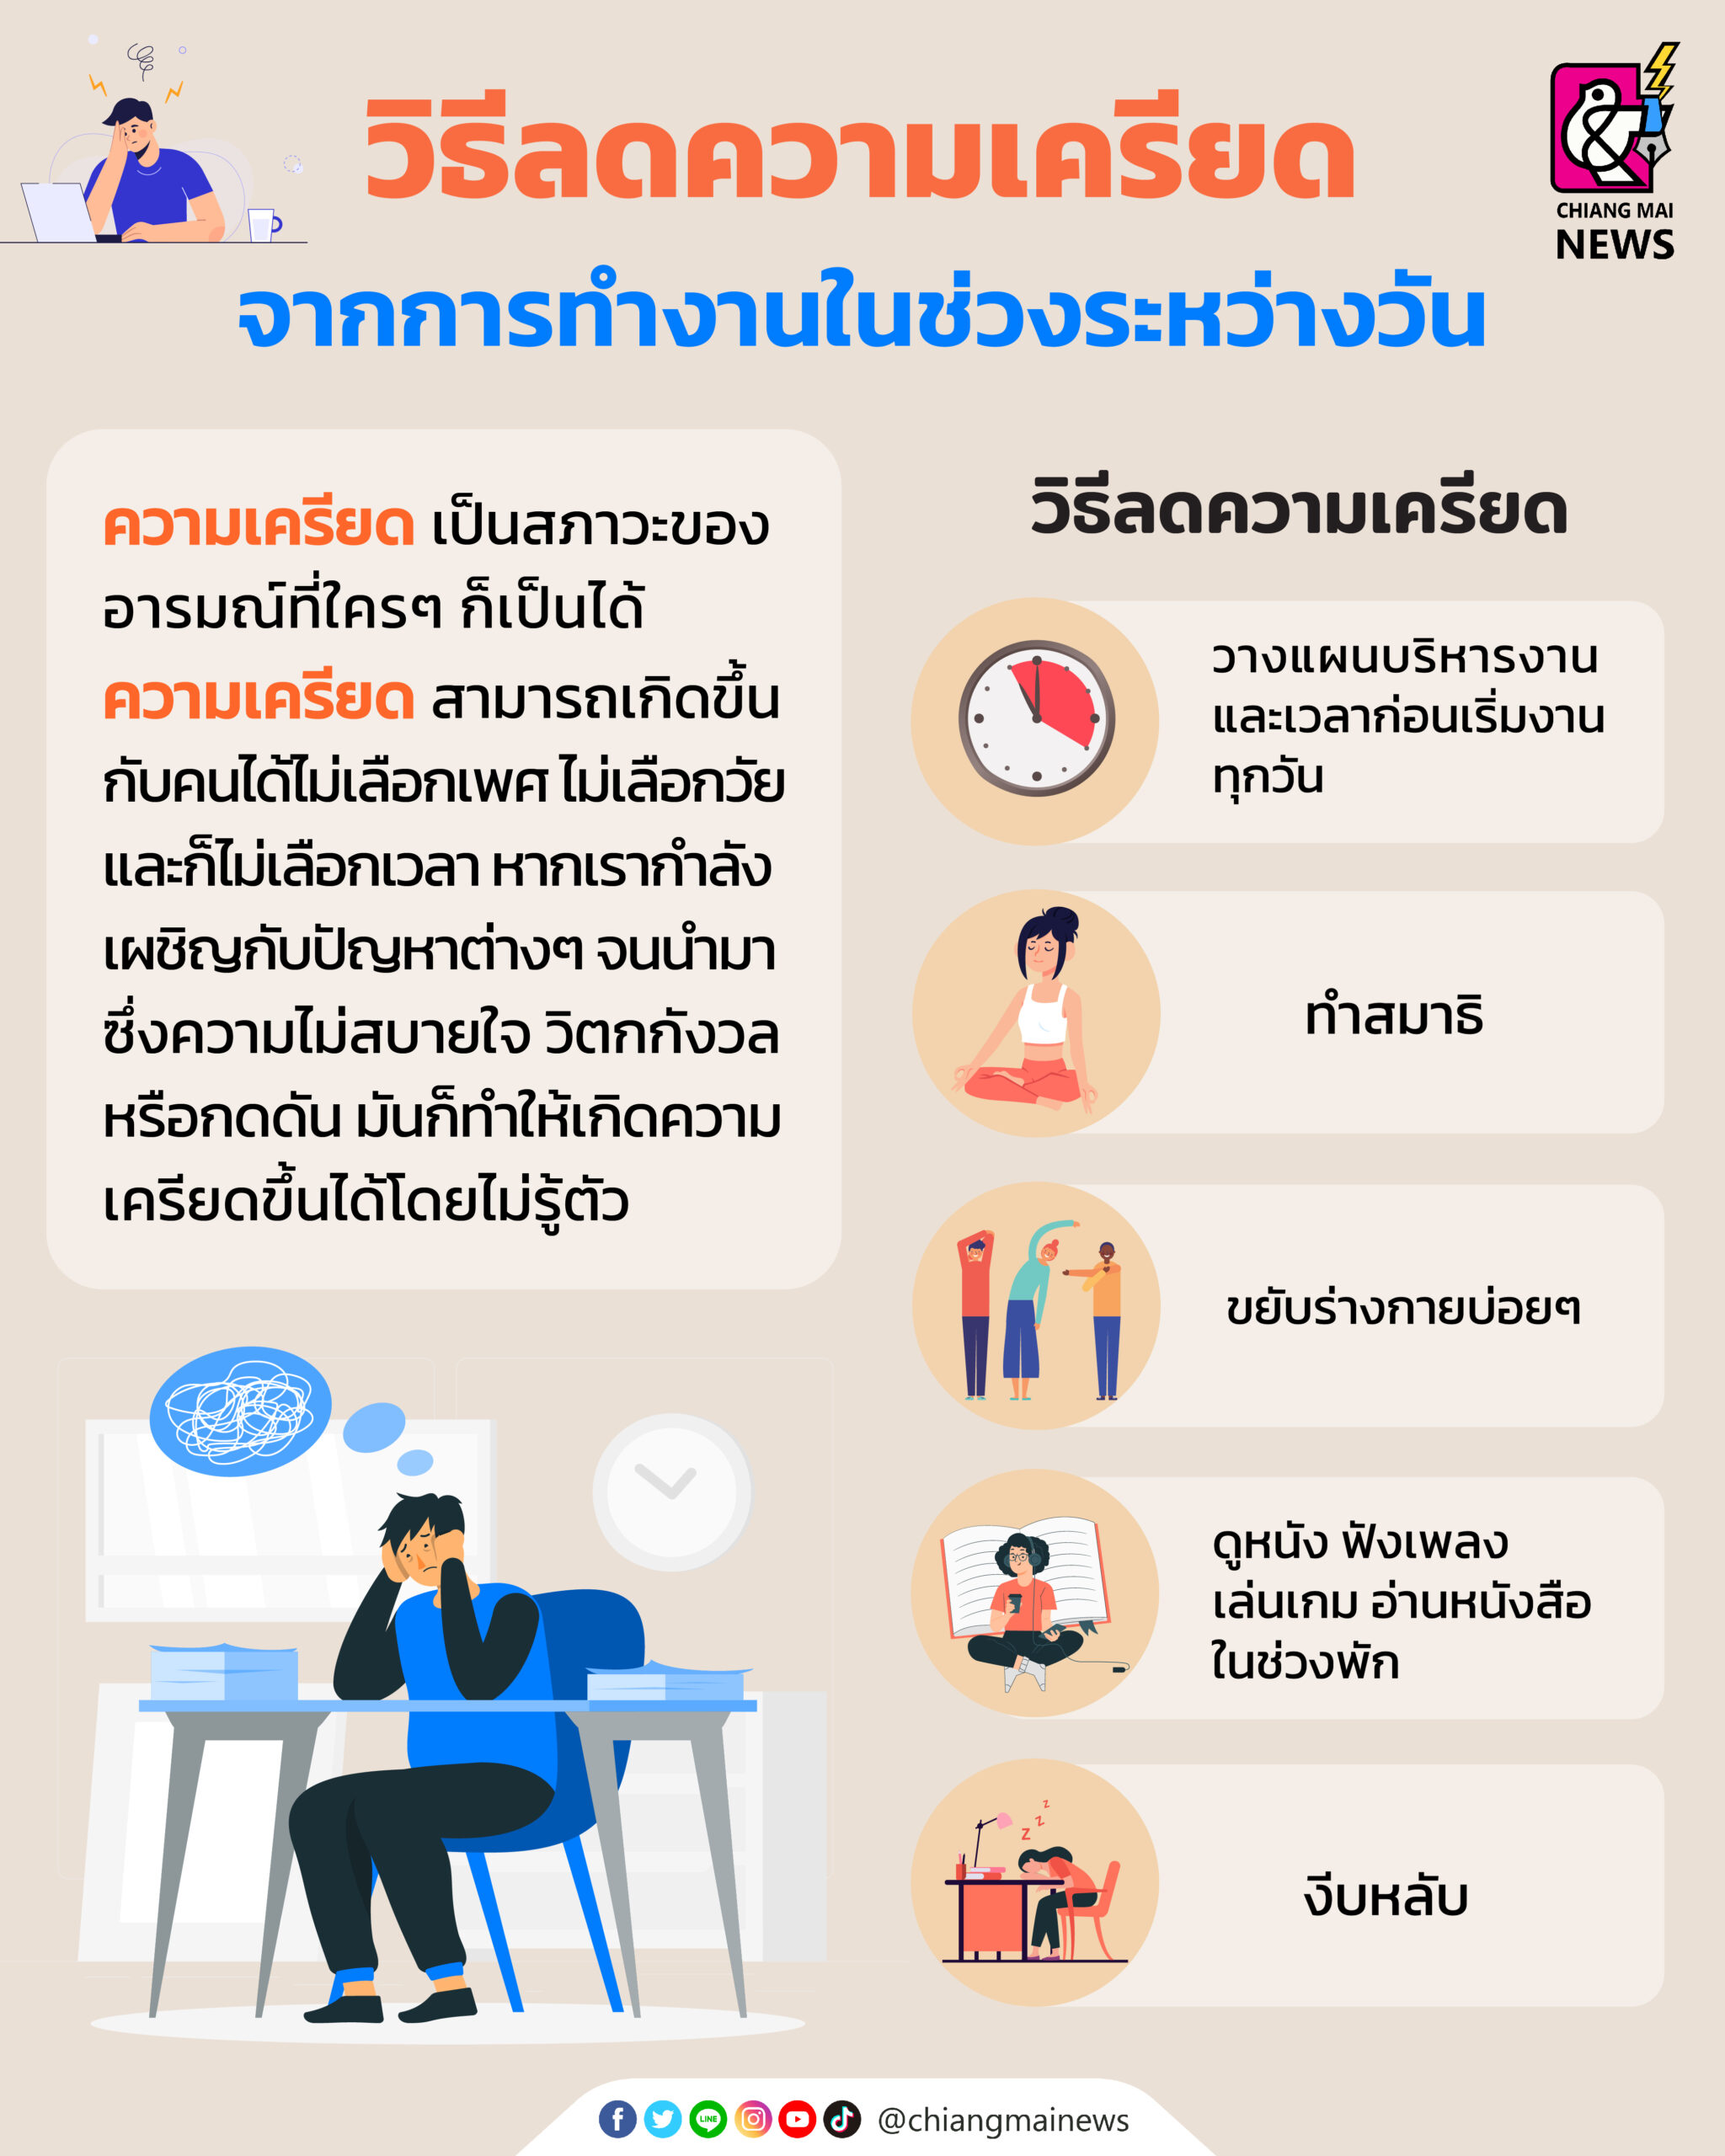 เคล็ดลับวิธีลดความเครียด จากการทำงานในช่วงระหว่างวัน - Chiang Mai News